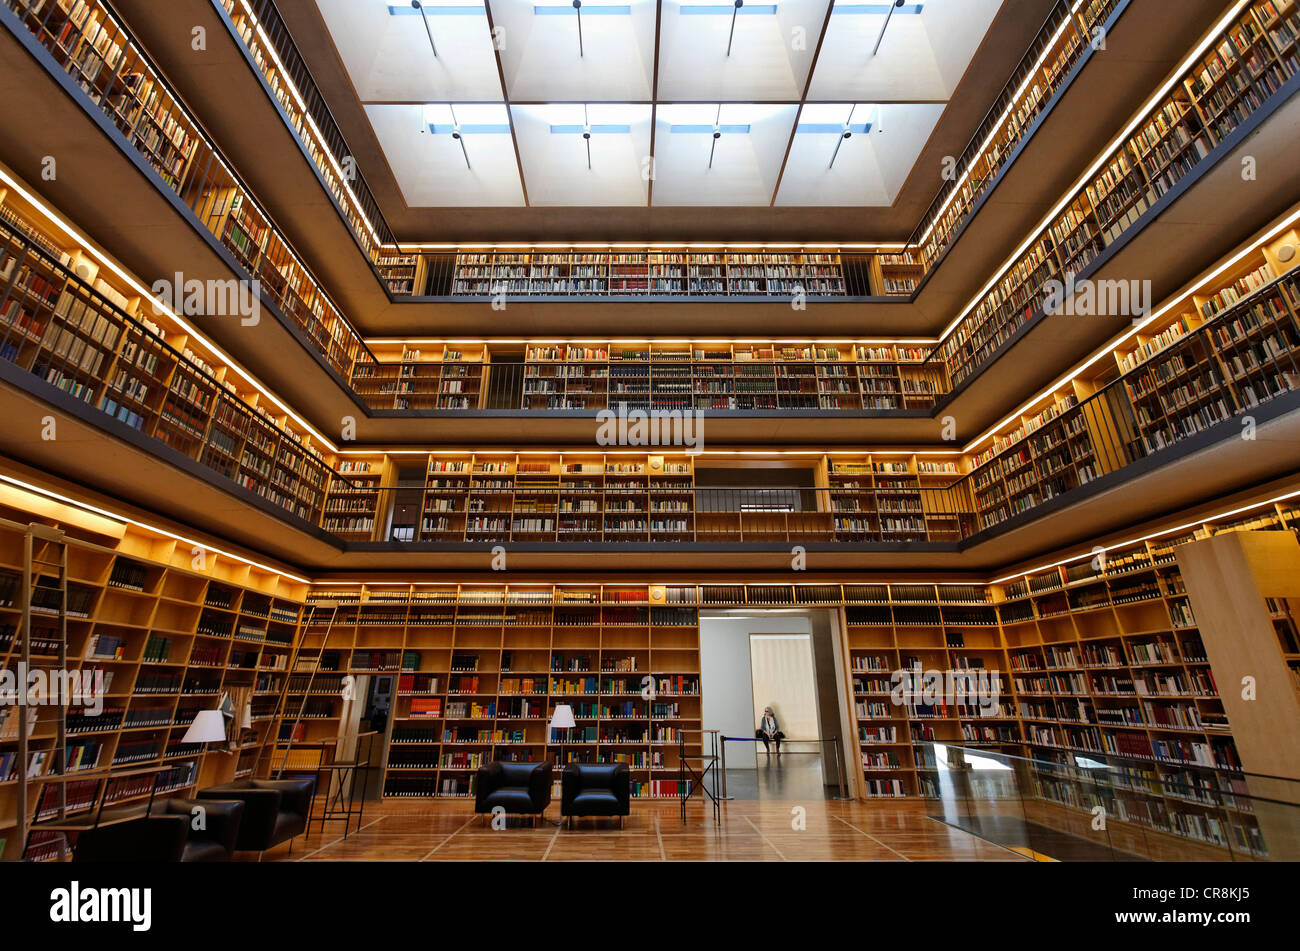 Bücherregale in der Kubus-Halle, Studienzentrum der Herzogin Anna Amalia Library in Weimar, Thüringen, Deutschland, Europa Stockfoto